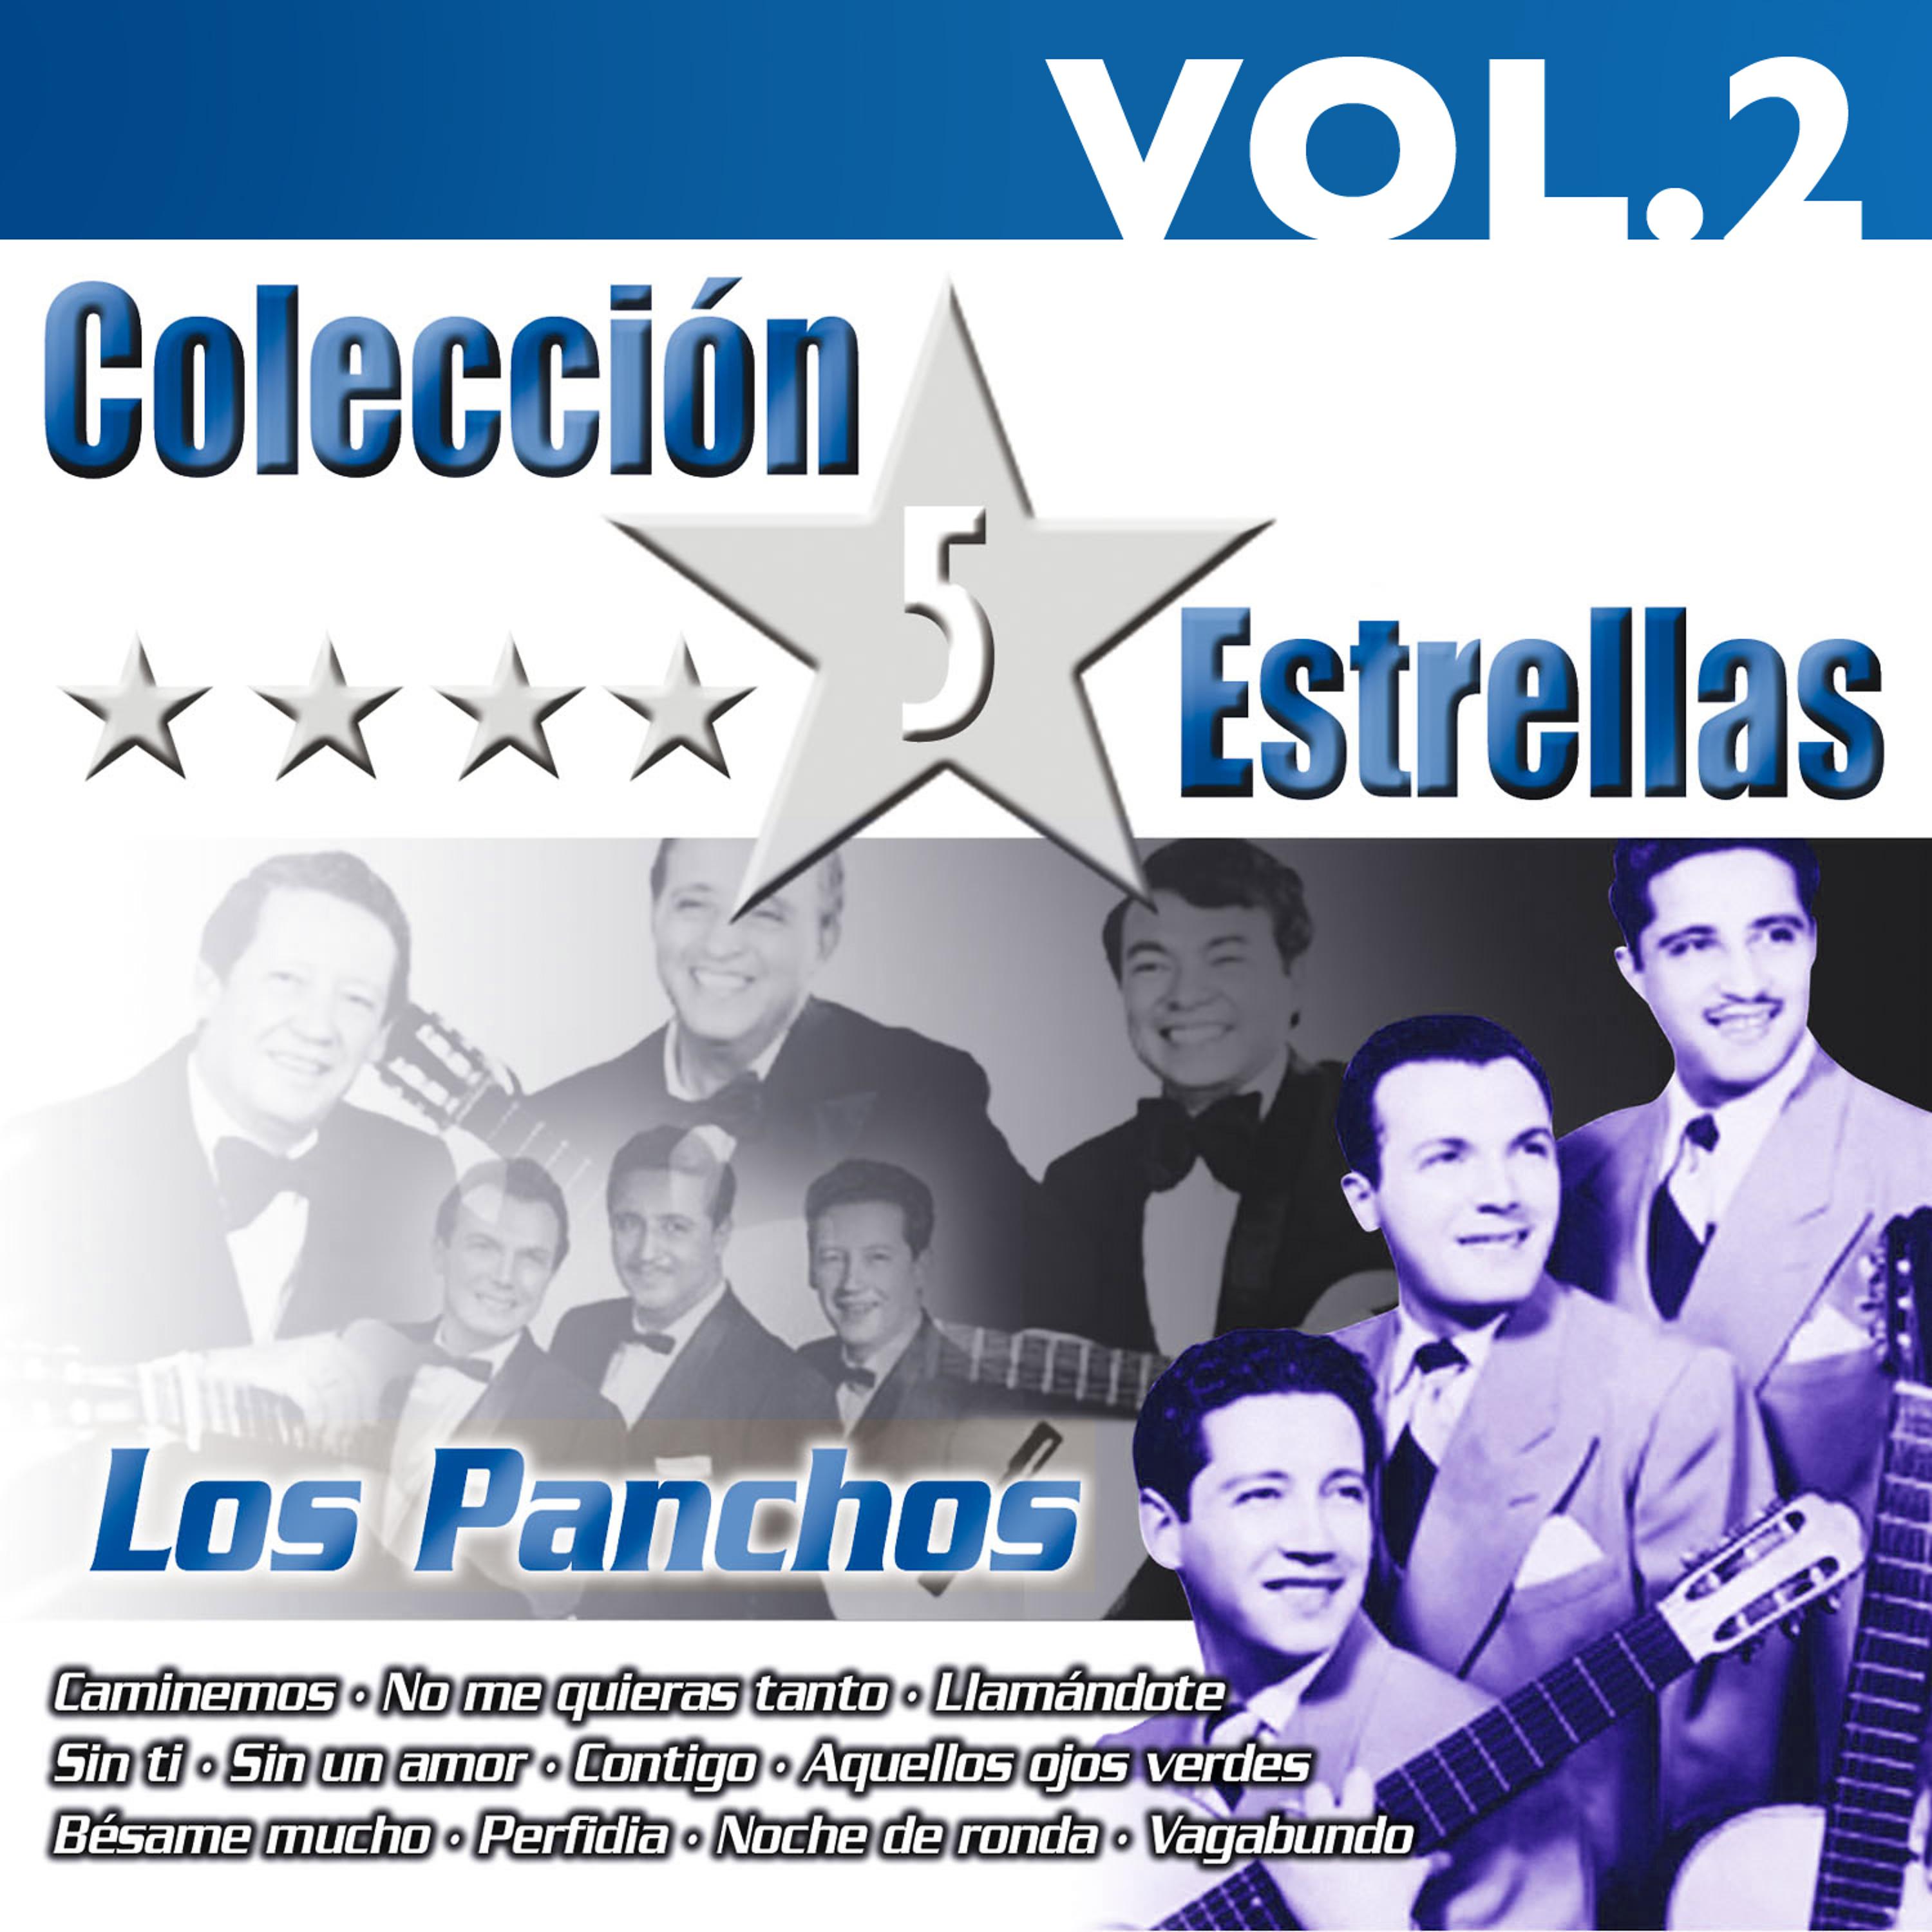 Постер альбома Colección 5 Estrellas. Los Panchos. Vol.2